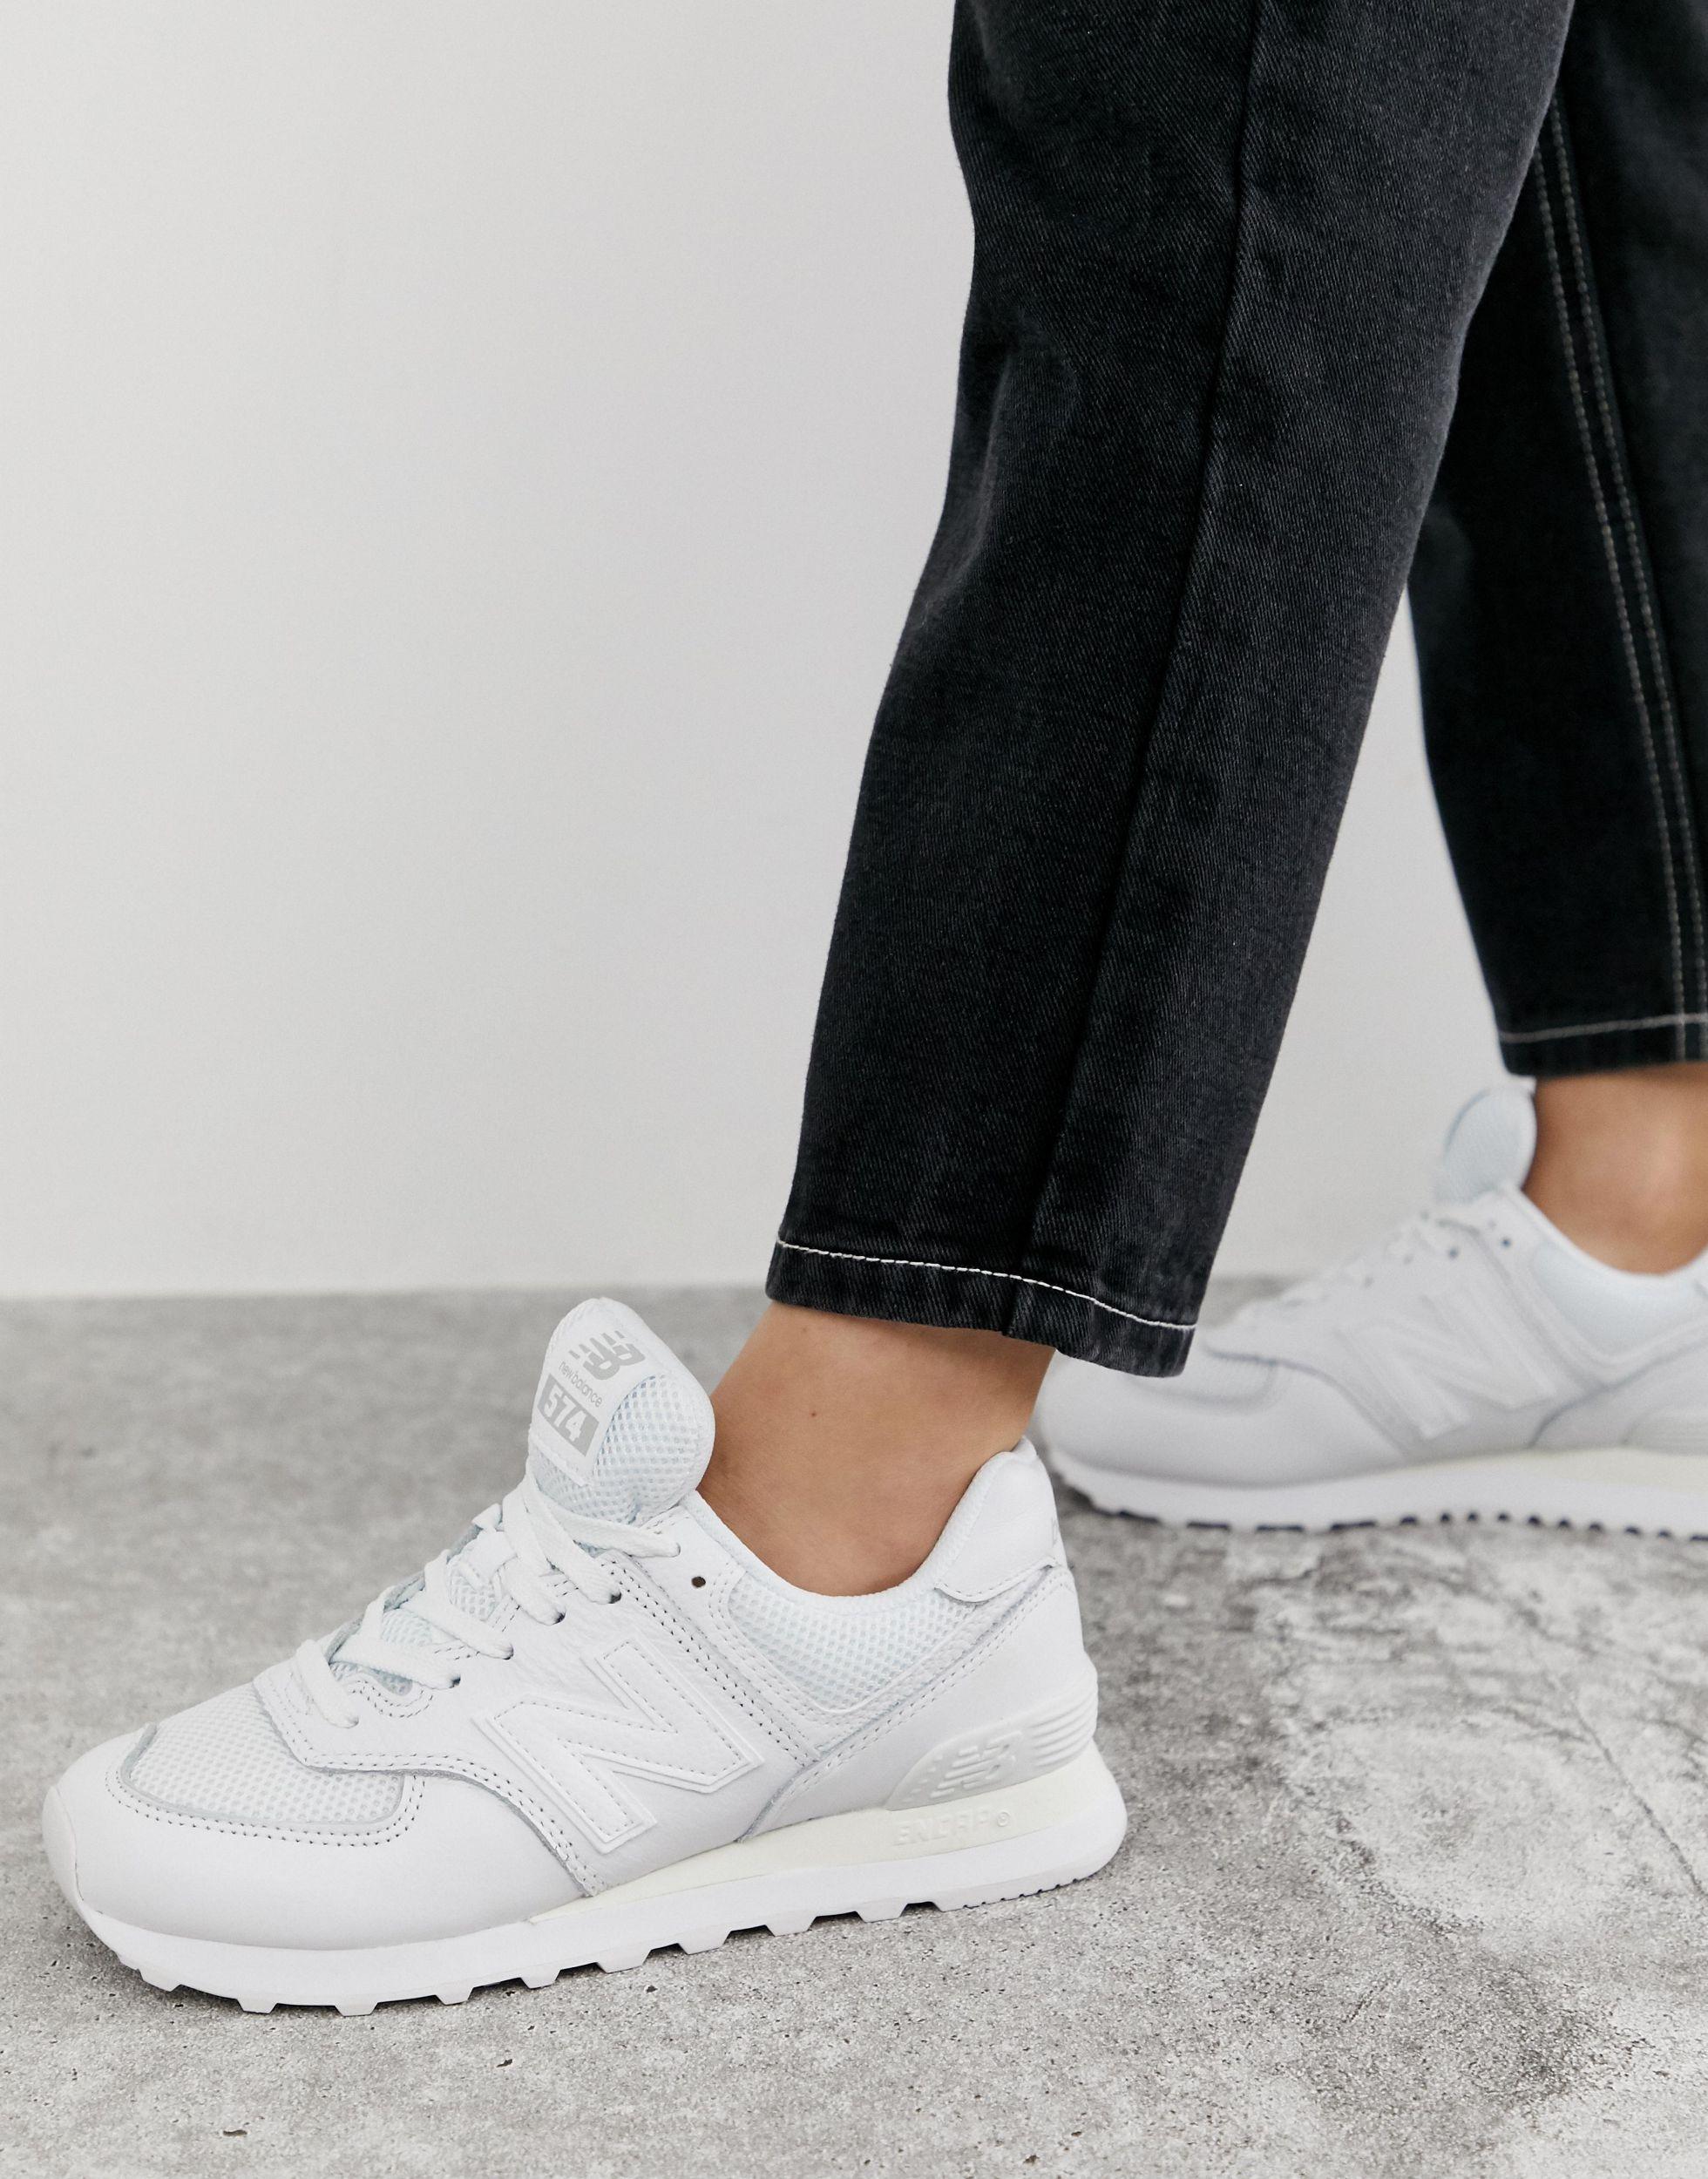 New Balance Leder – 574 – Komplett weiße Sneaker in Weiß | Lyst AT